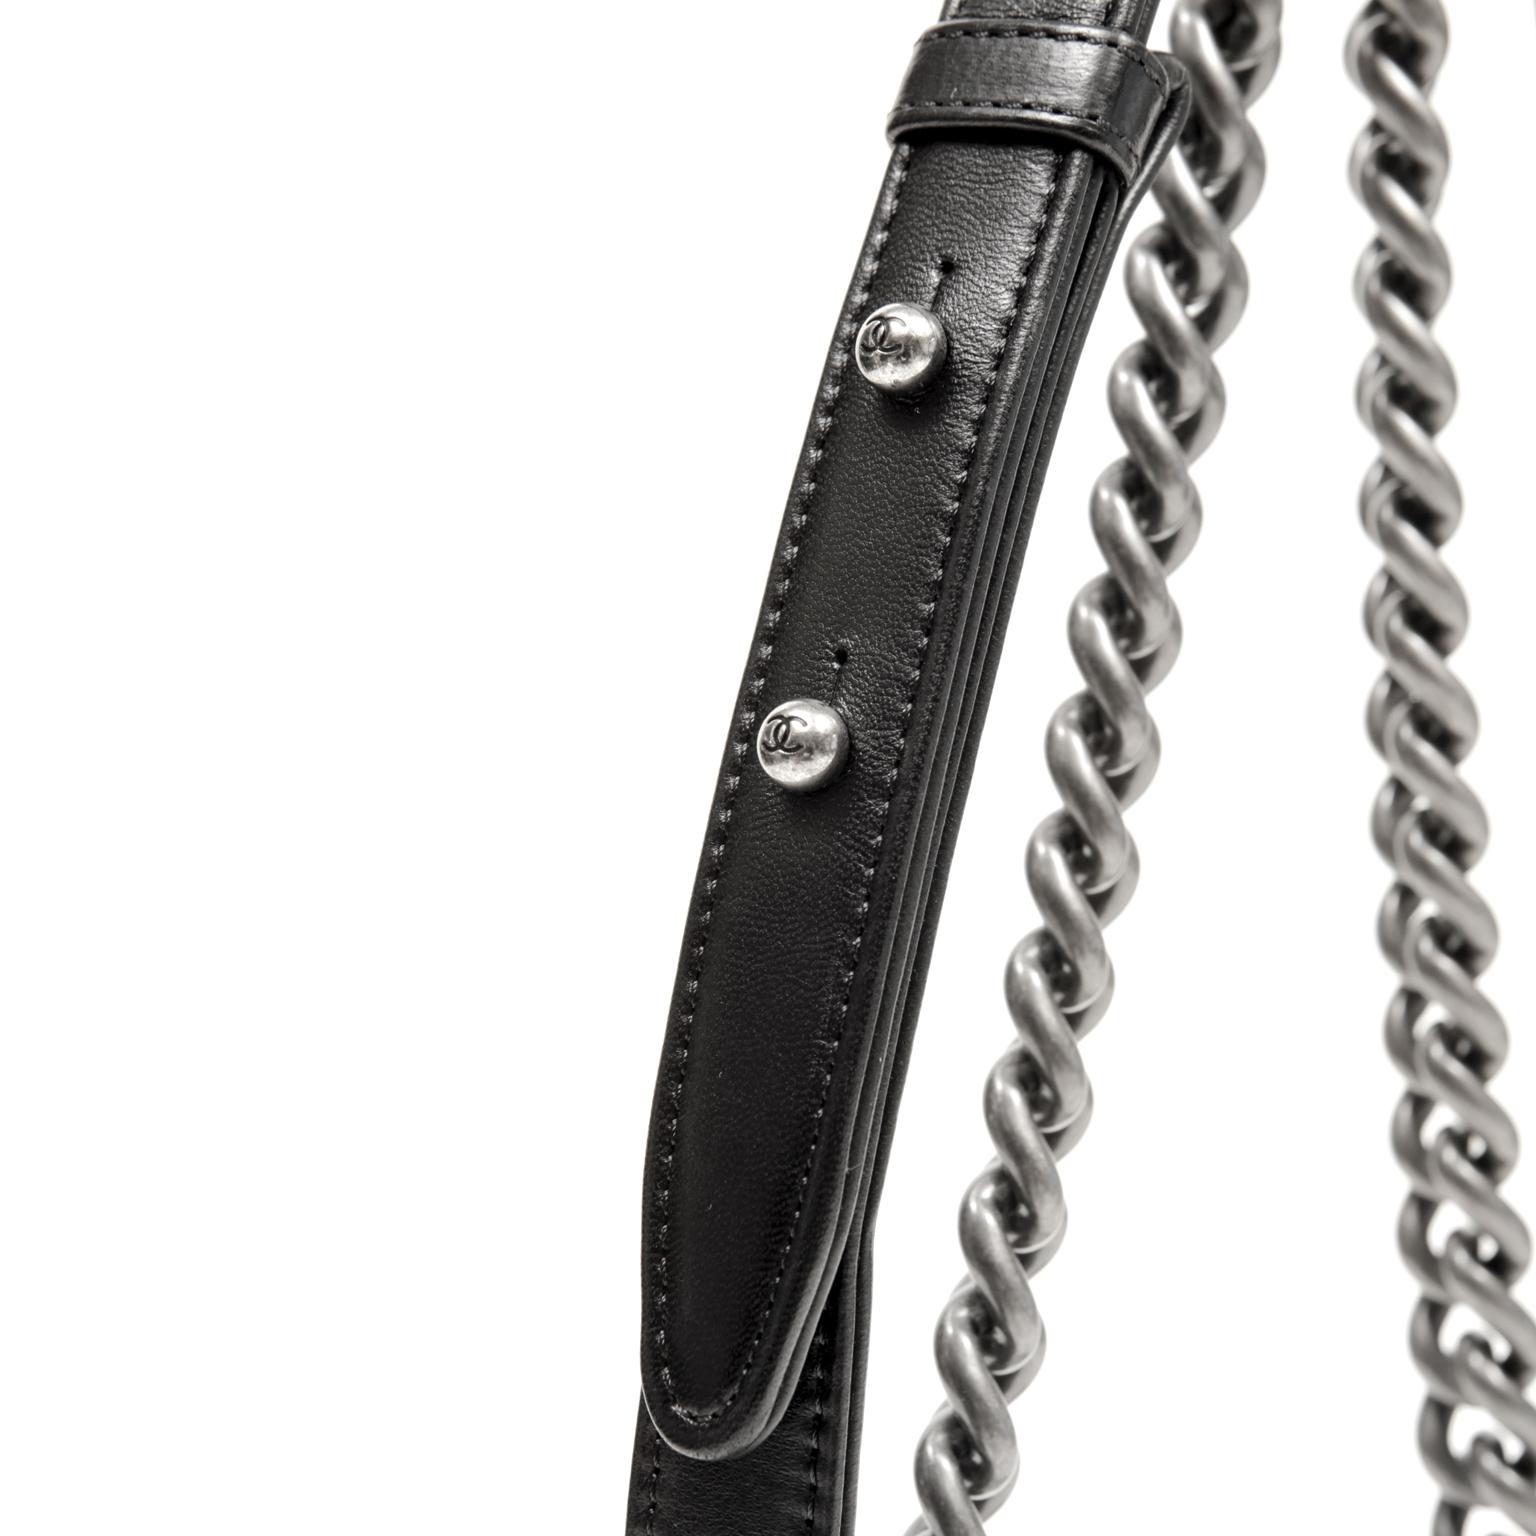 Chanel Swarovski Crystal Boy Bag- Black Leather with Ruthenium HW 1